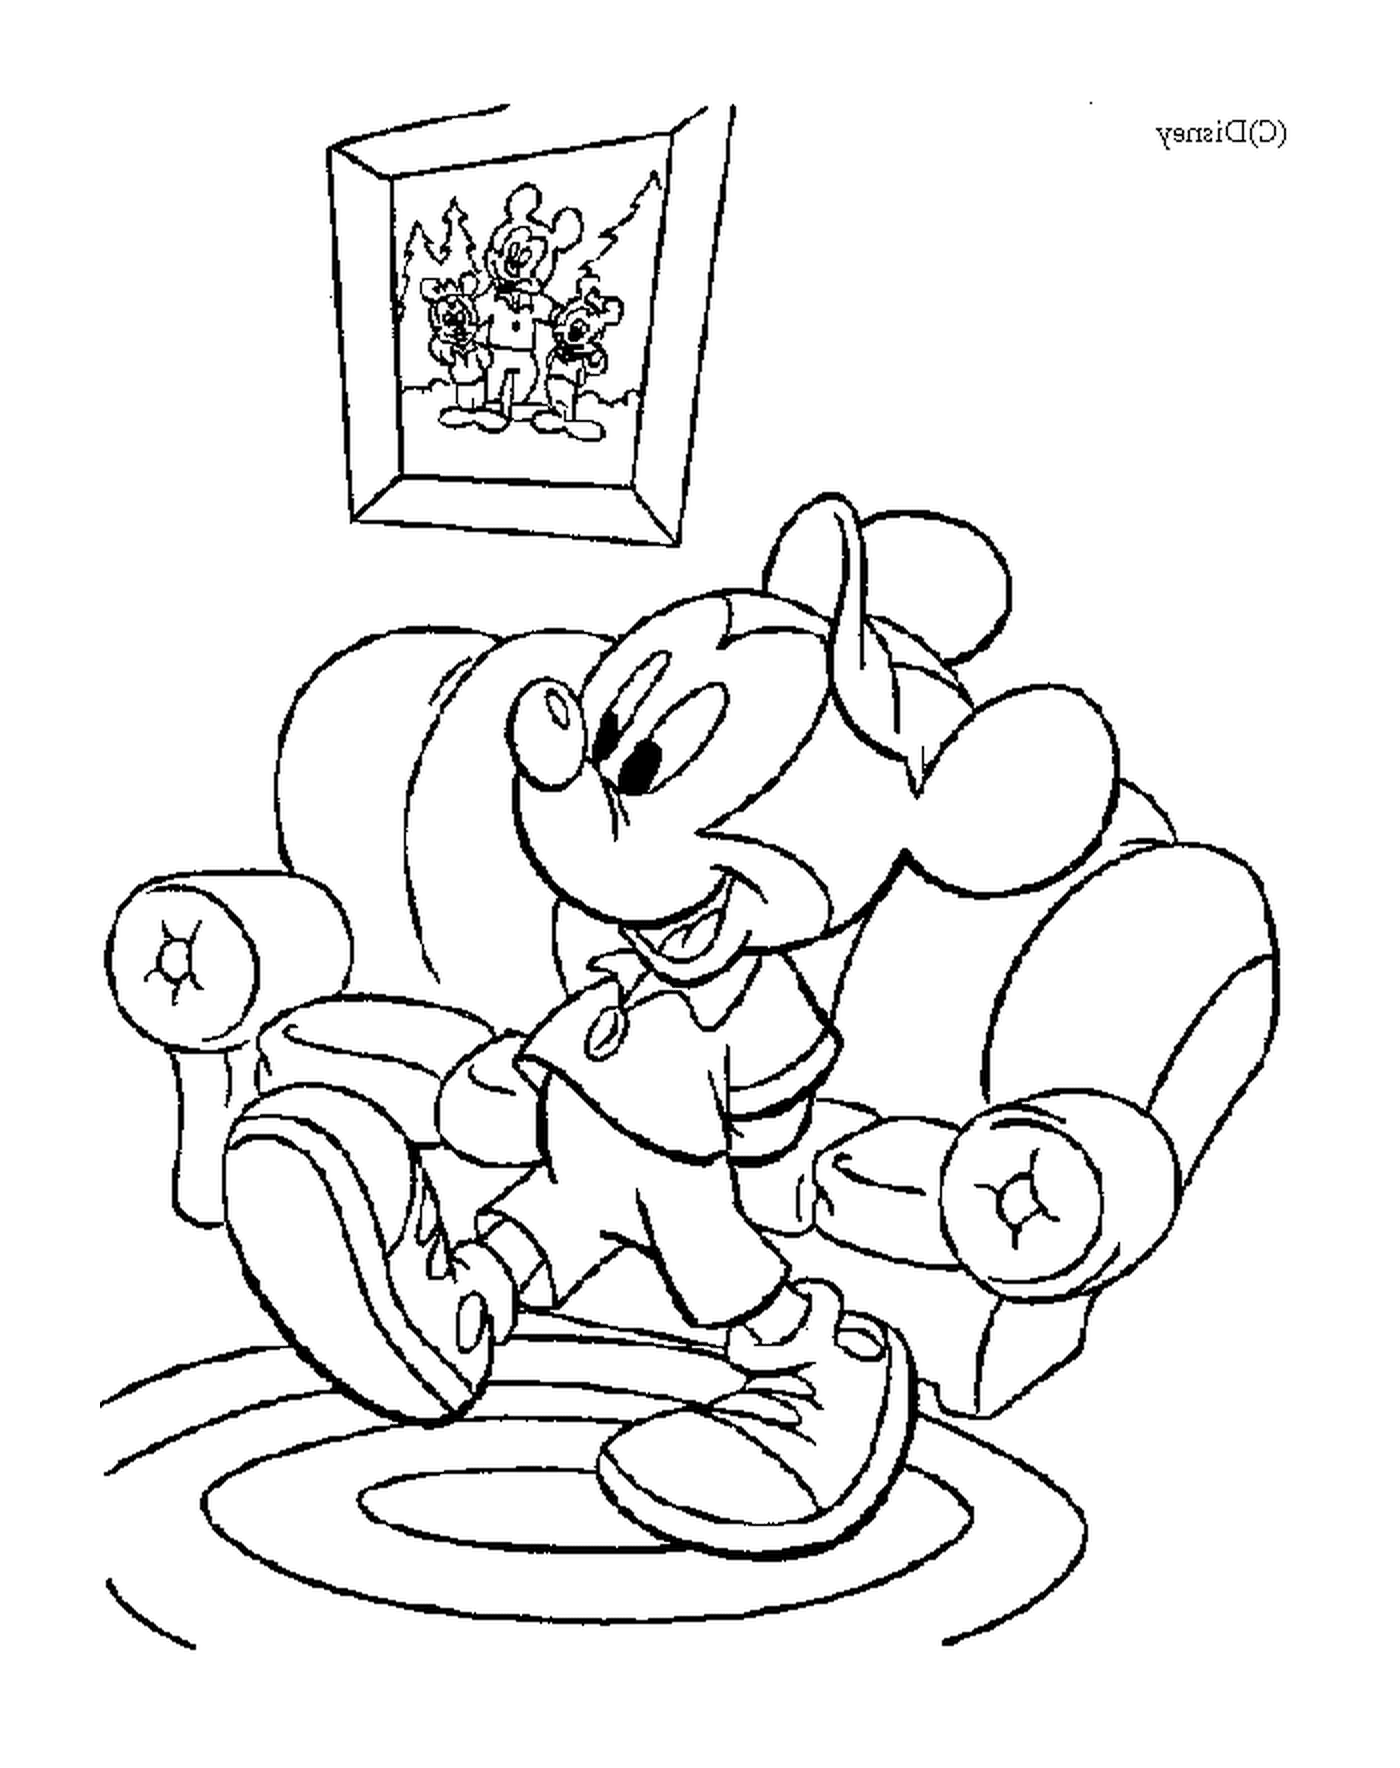  Topolino nel suo salotto: Minnie Mouse 